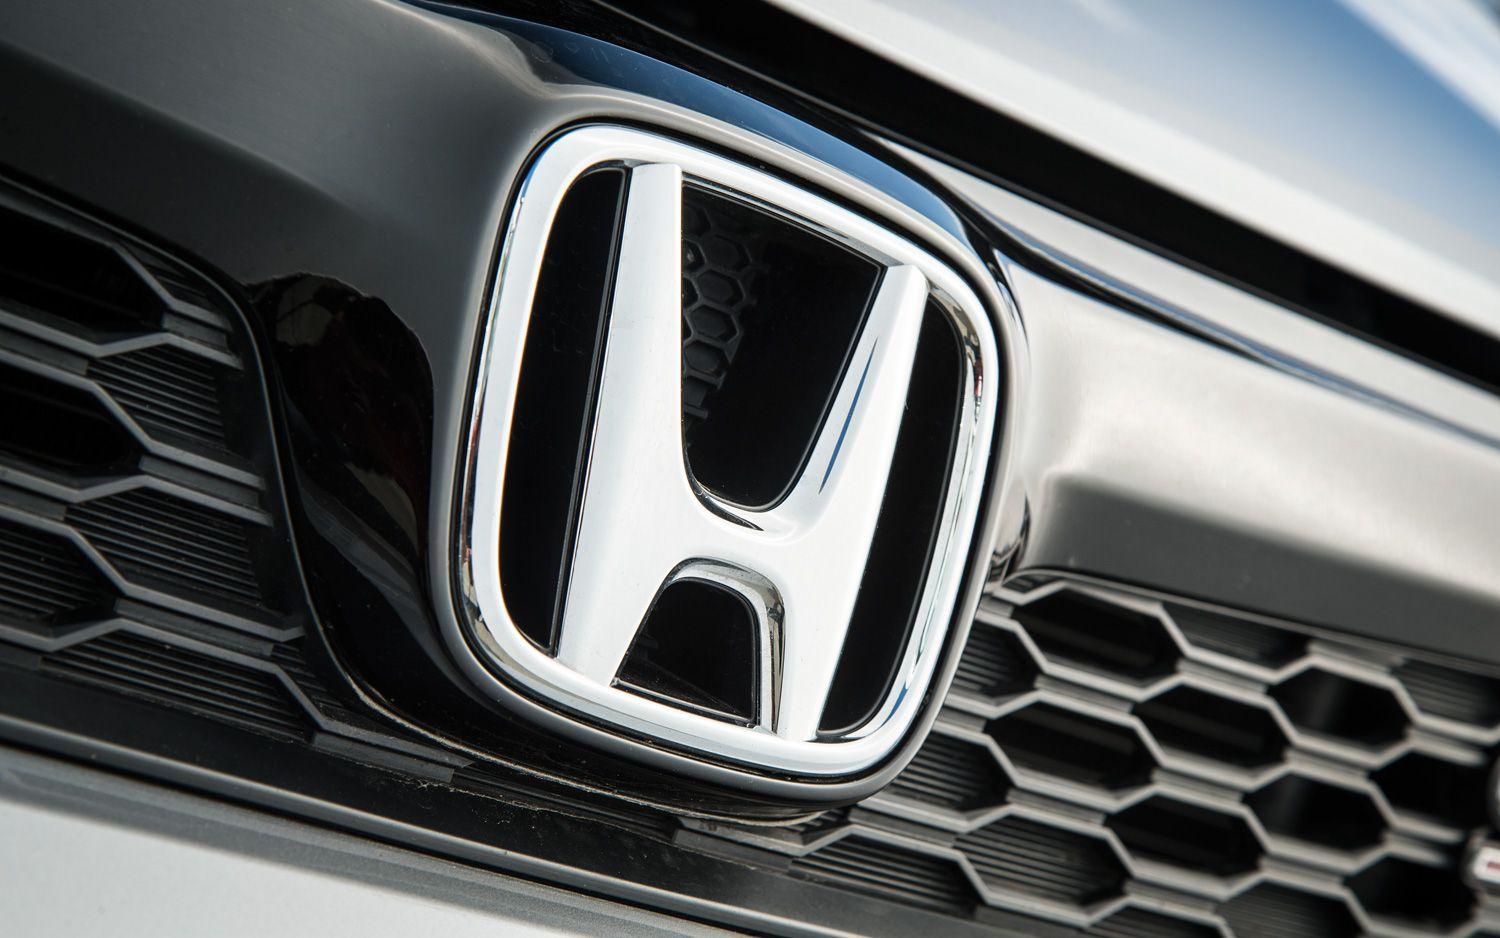 2013 Honda Civic Logo - Honda Commercial — Audible Shift